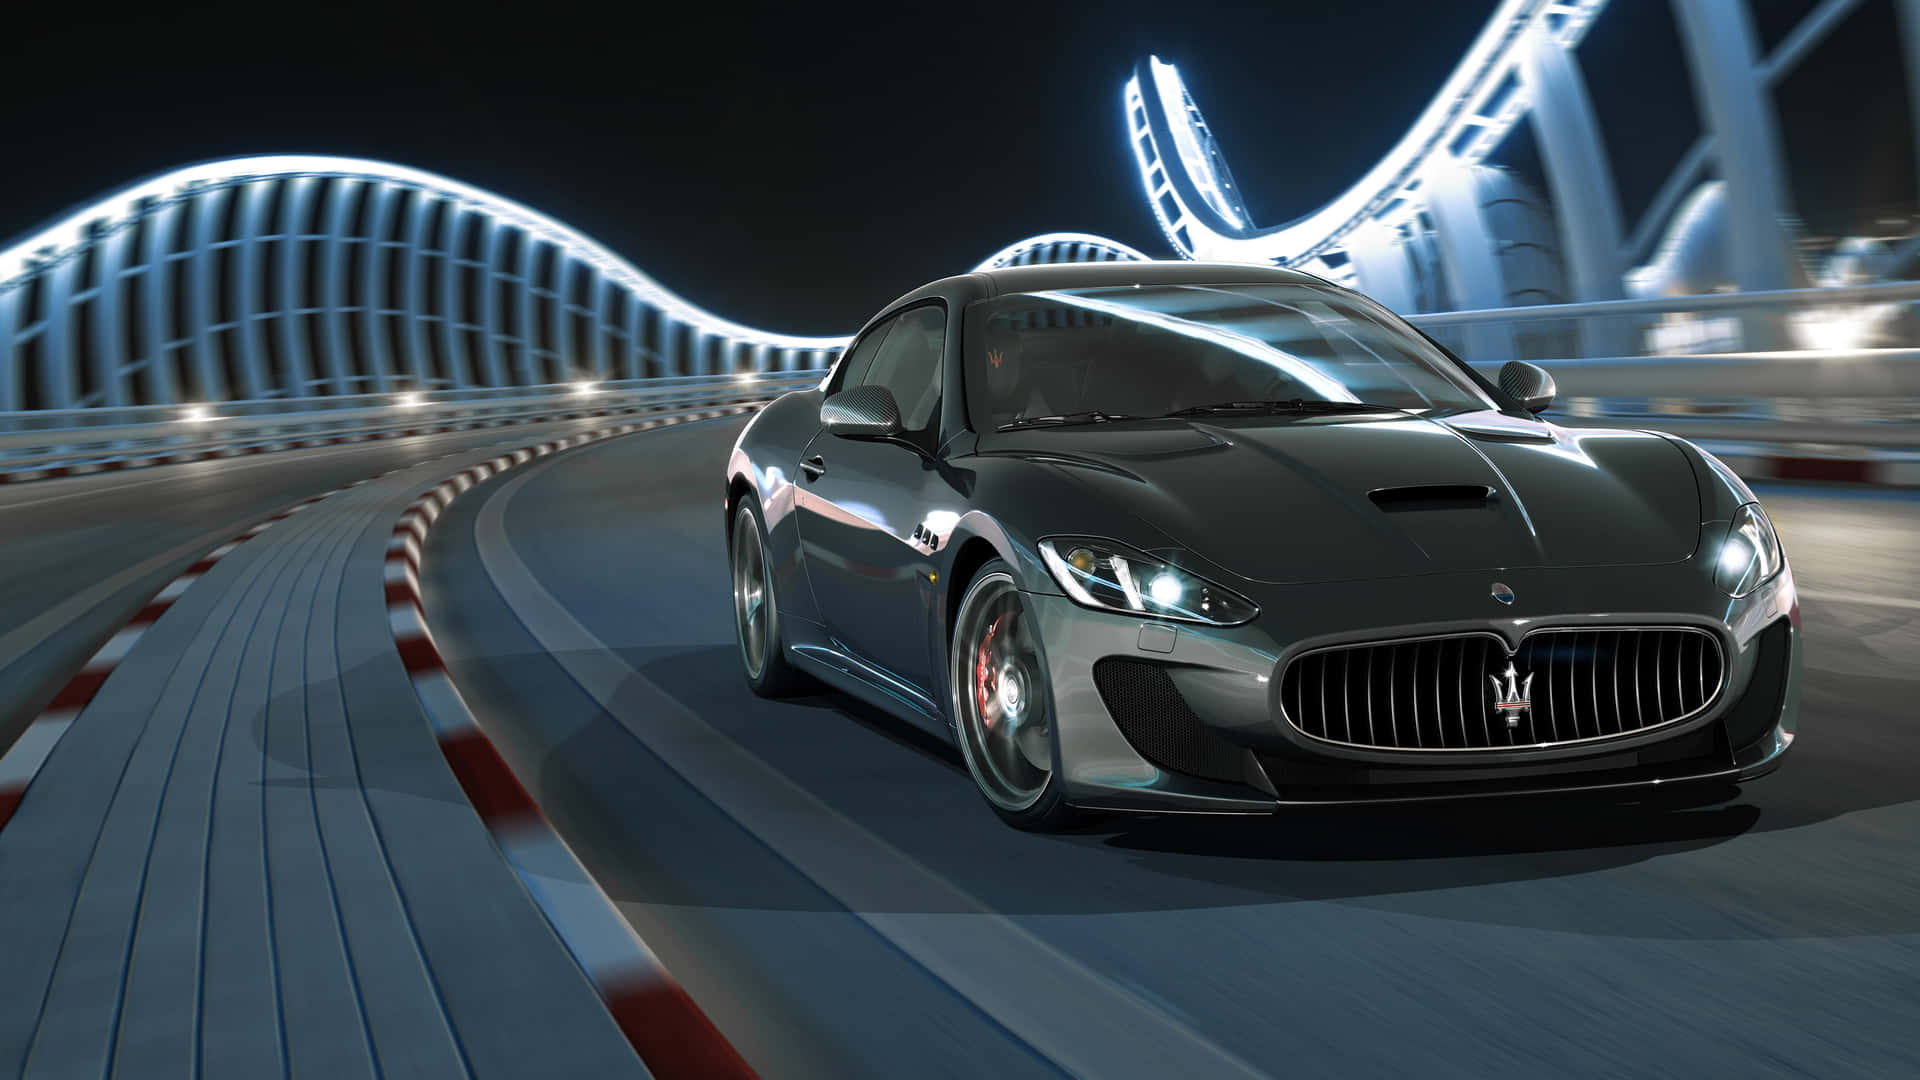 Maserati Granturismo - Maserati Granturismo - Maserati Granturismo - Mas Wallpaper